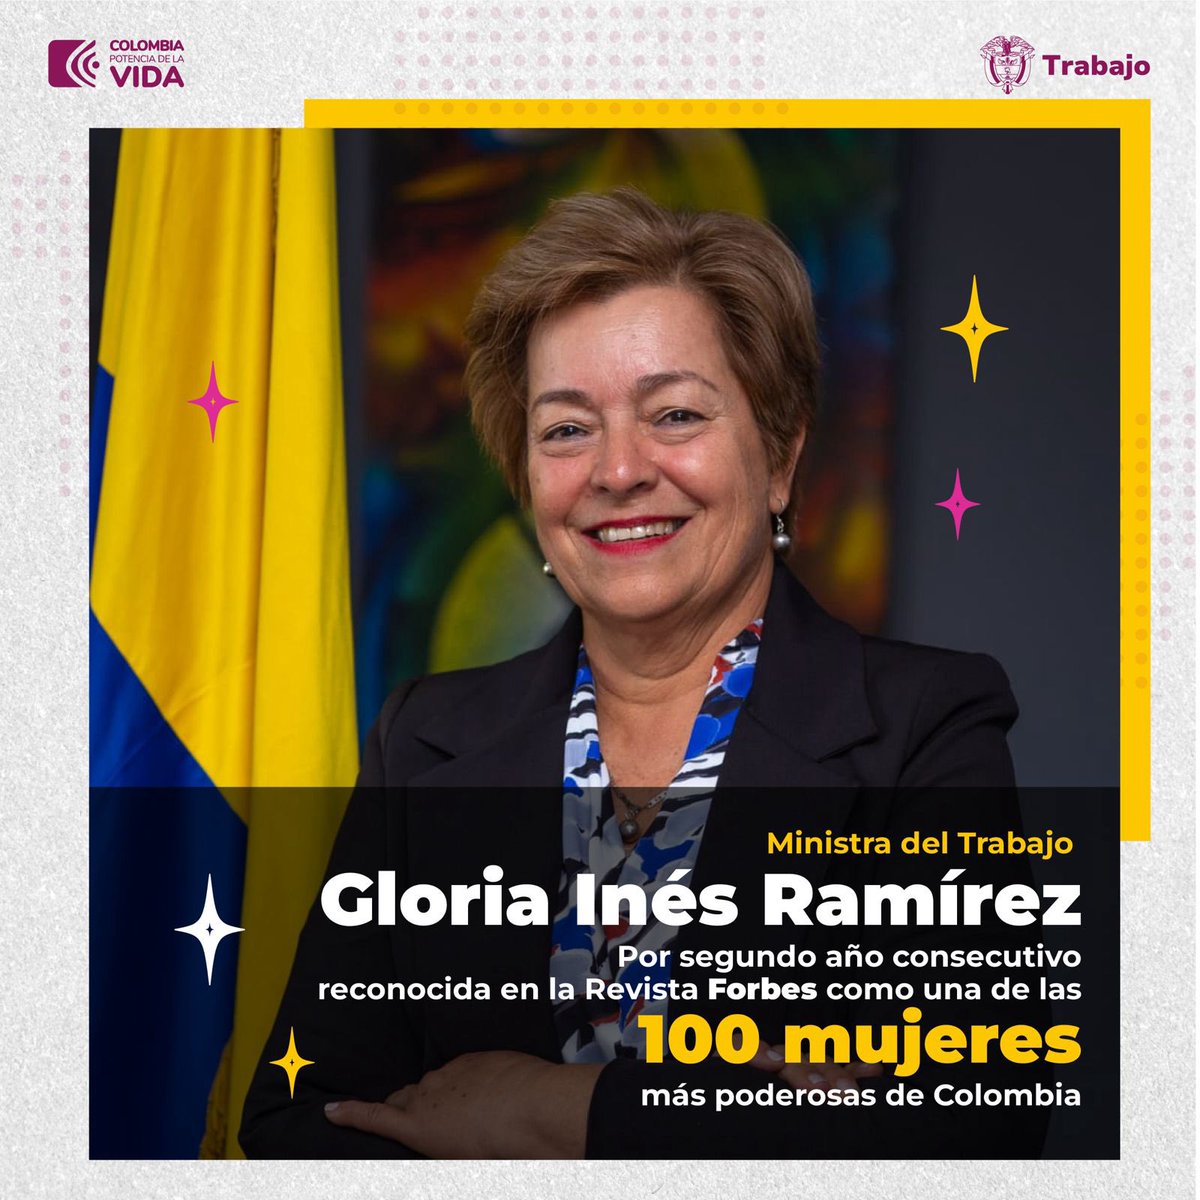 🎉Por segundo año consecutivo la ministra del Trabajo @GloriaRamirezRi es reconocida como una de las 100 mujeres más poderosas de Colombia, destacando su labor en la defensa de los derechos humanos y la búsqueda de consensos. ¡Felicitaciones! 👏🏽👏🏽👏🏽👏🏽